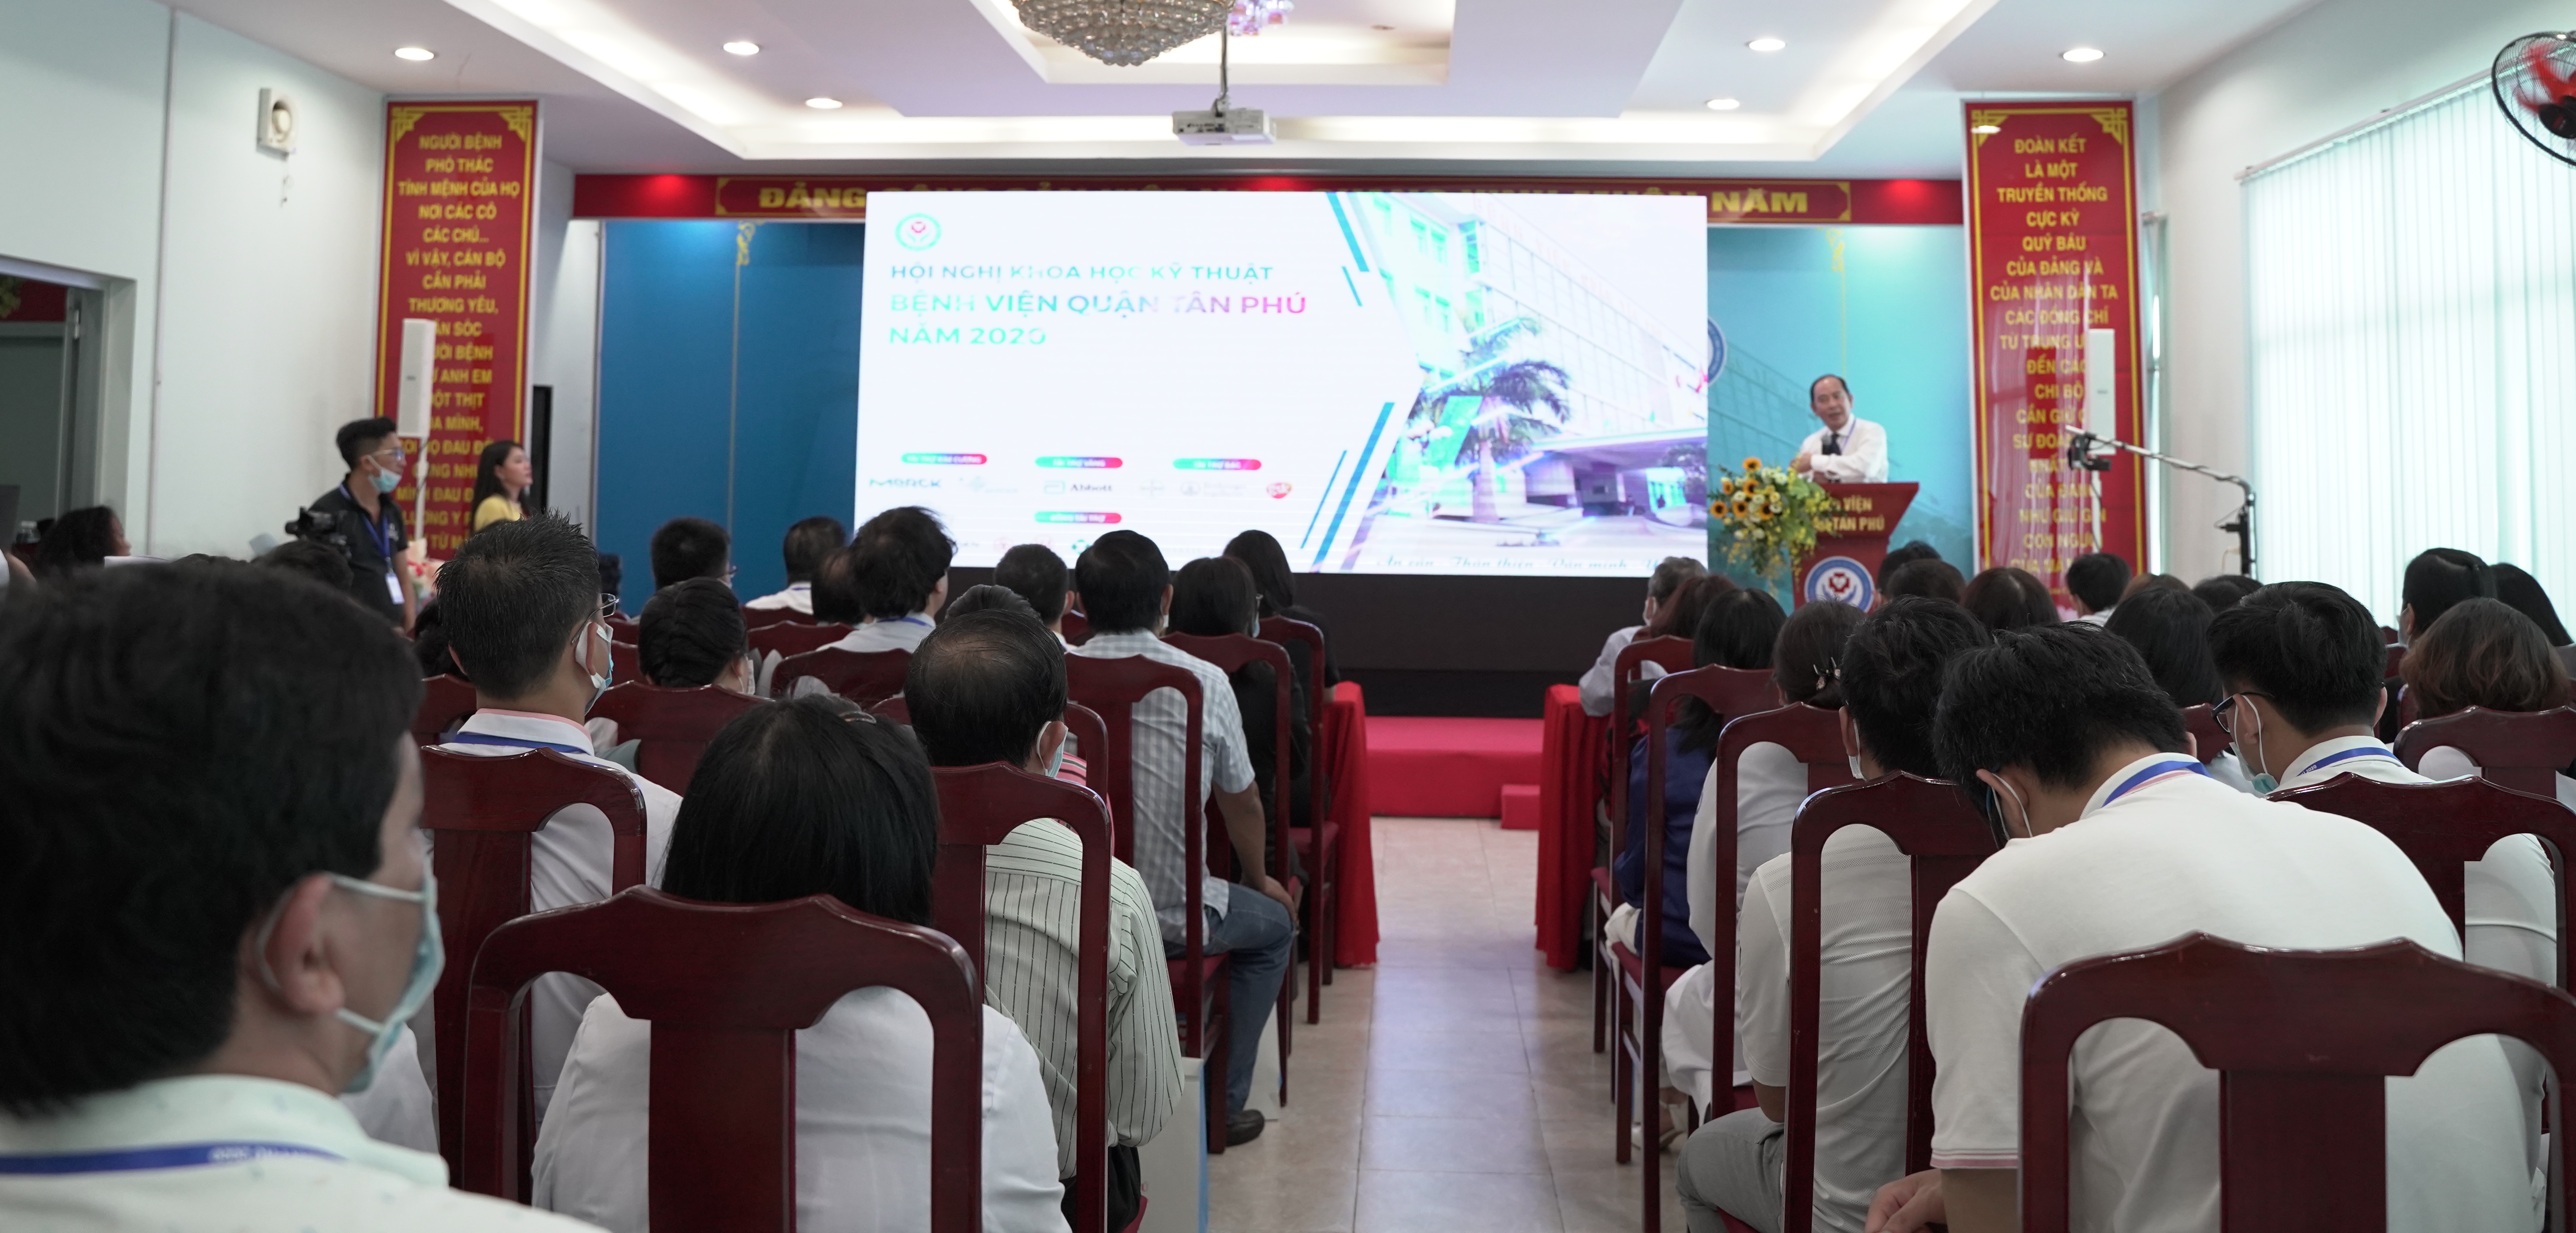 Bệnh viện quận Tân Phú tổ chức thành công hội nghị khoa học kỹ thuật năm 2020